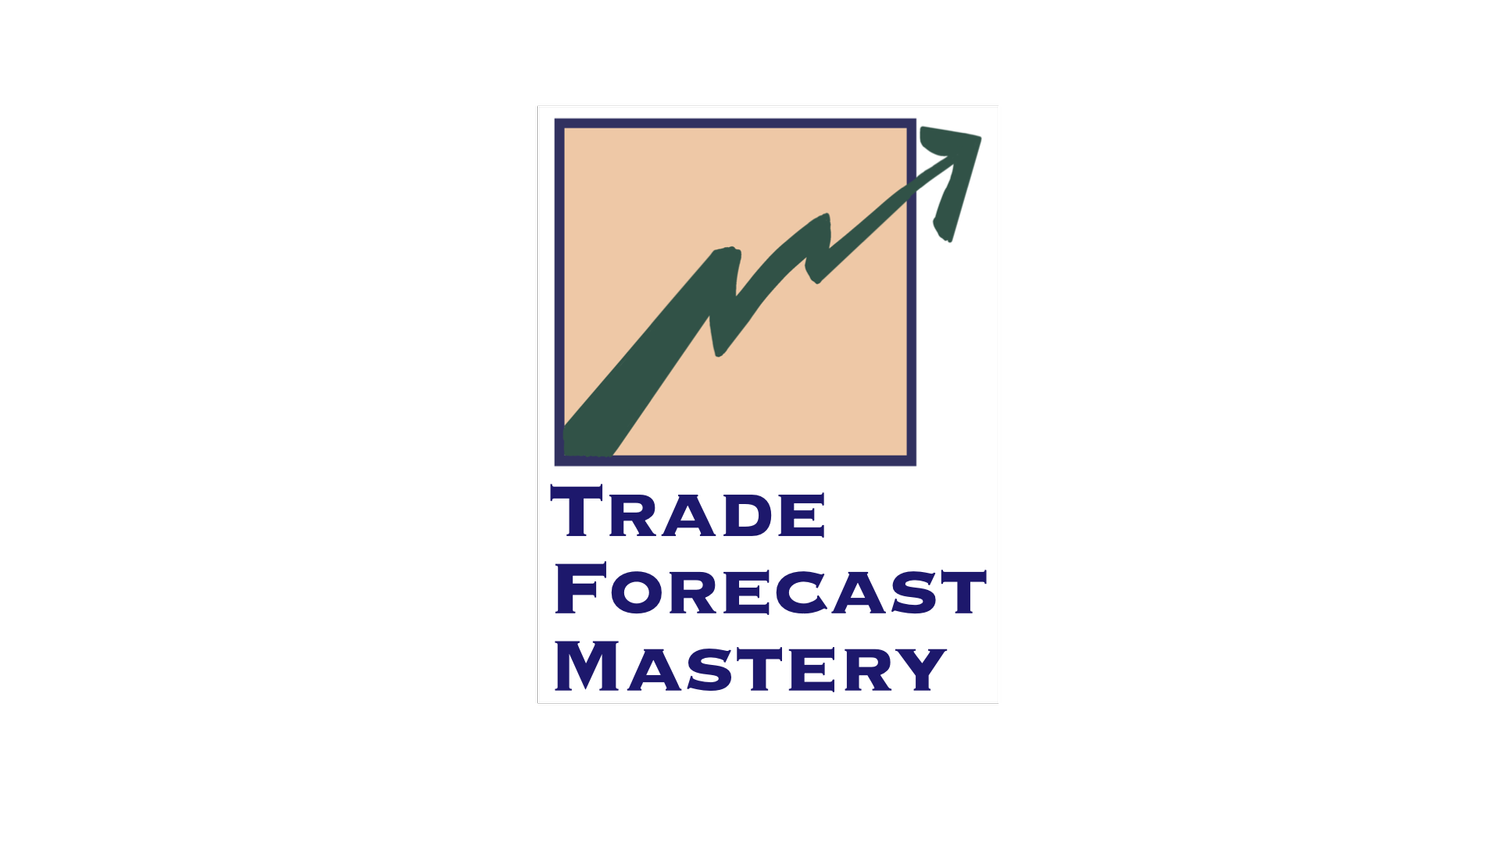 Trade Forecast Mastery